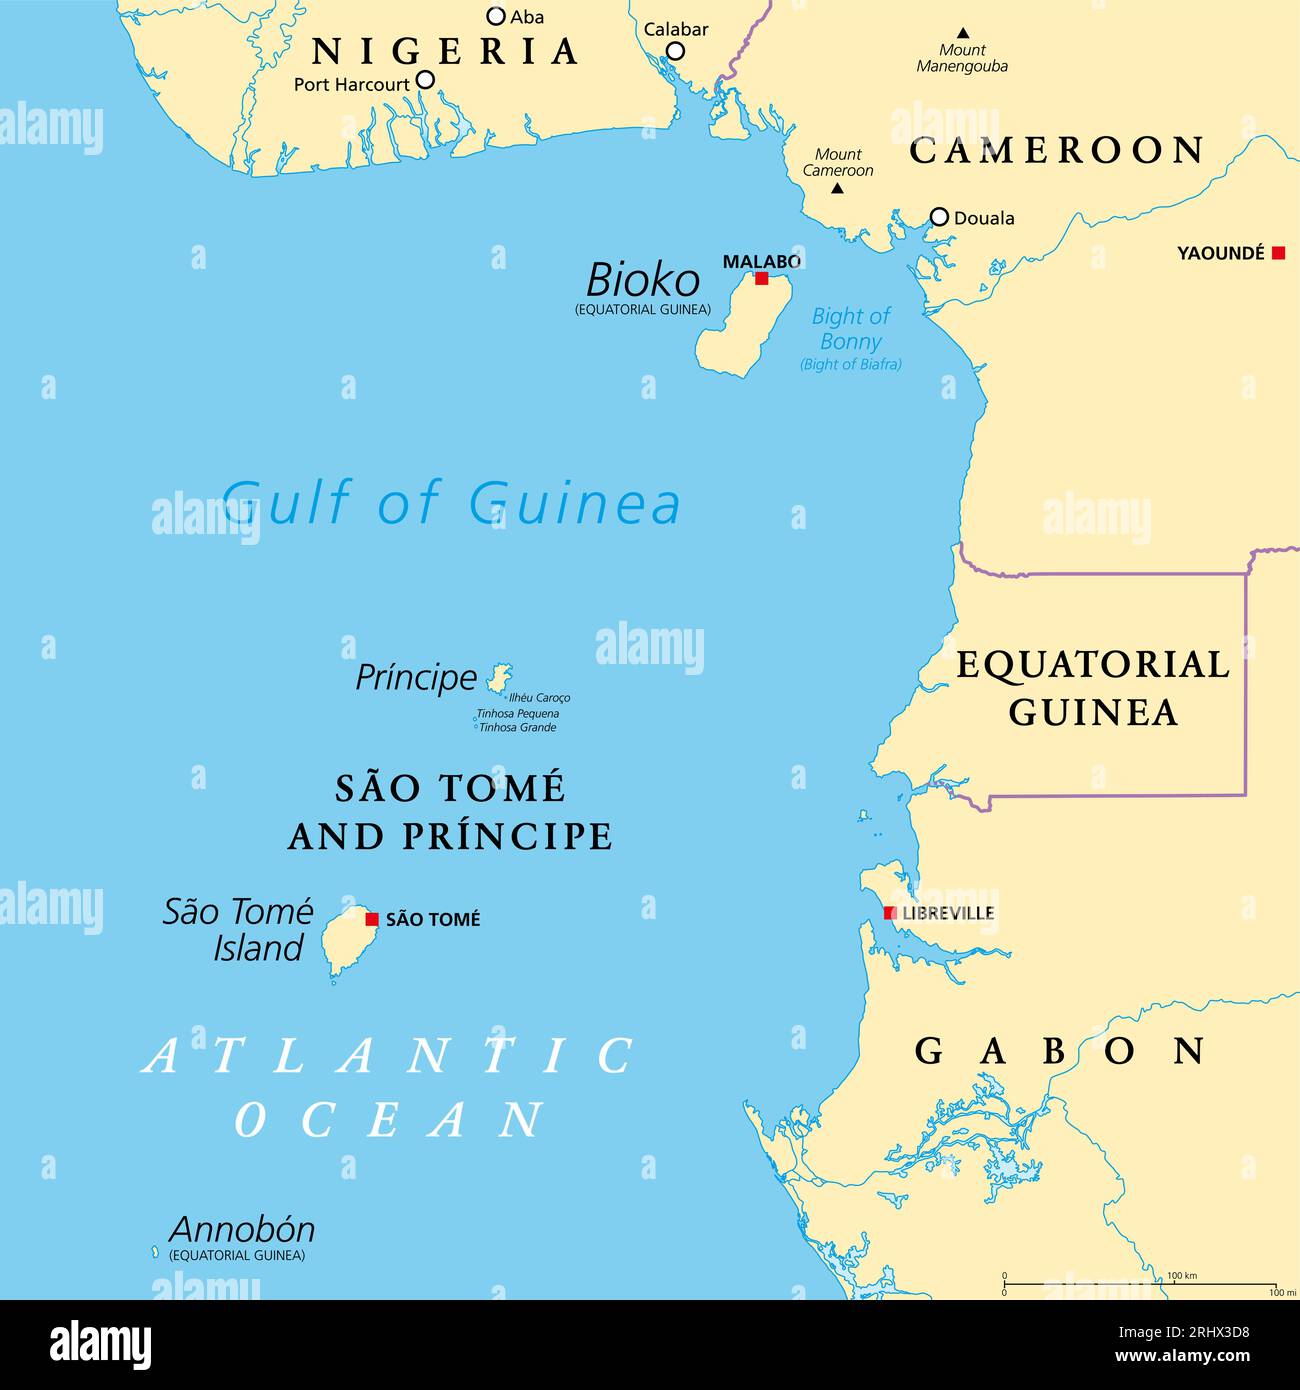 Kamerun-Linie, vulkanische Inselkette vor der Küste Westafrikas, politische Karte. Lange Vulkankette, einschließlich Inseln im Golf von Guinea. Stockfoto